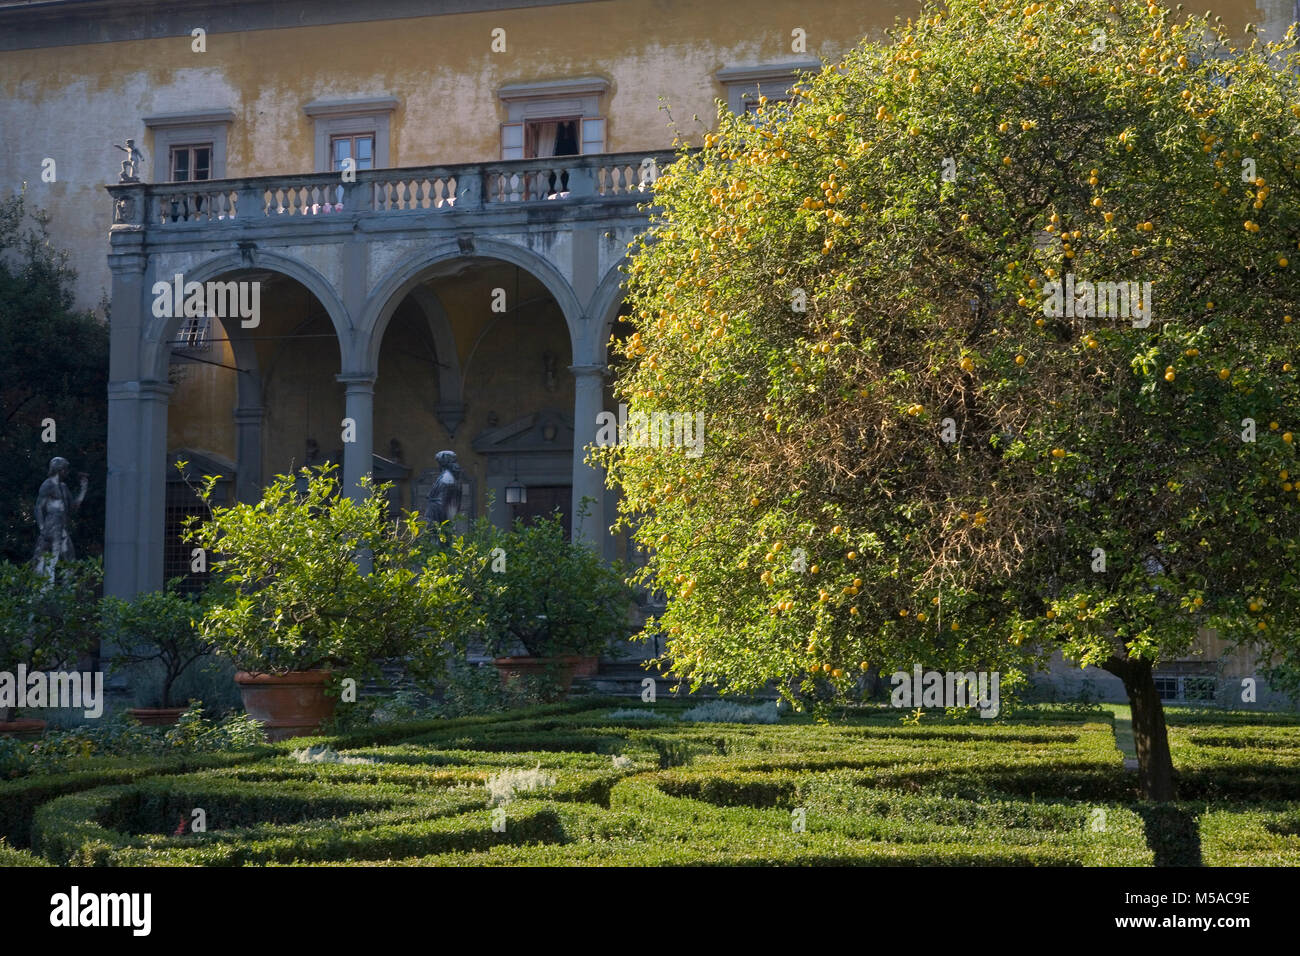 Giardino Corsini al Prato, Florenz, Toskana, Italien: Blick auf den Palast über der Box Hedging, Zitronenbäumen und Bildhauerkunst Stockfoto